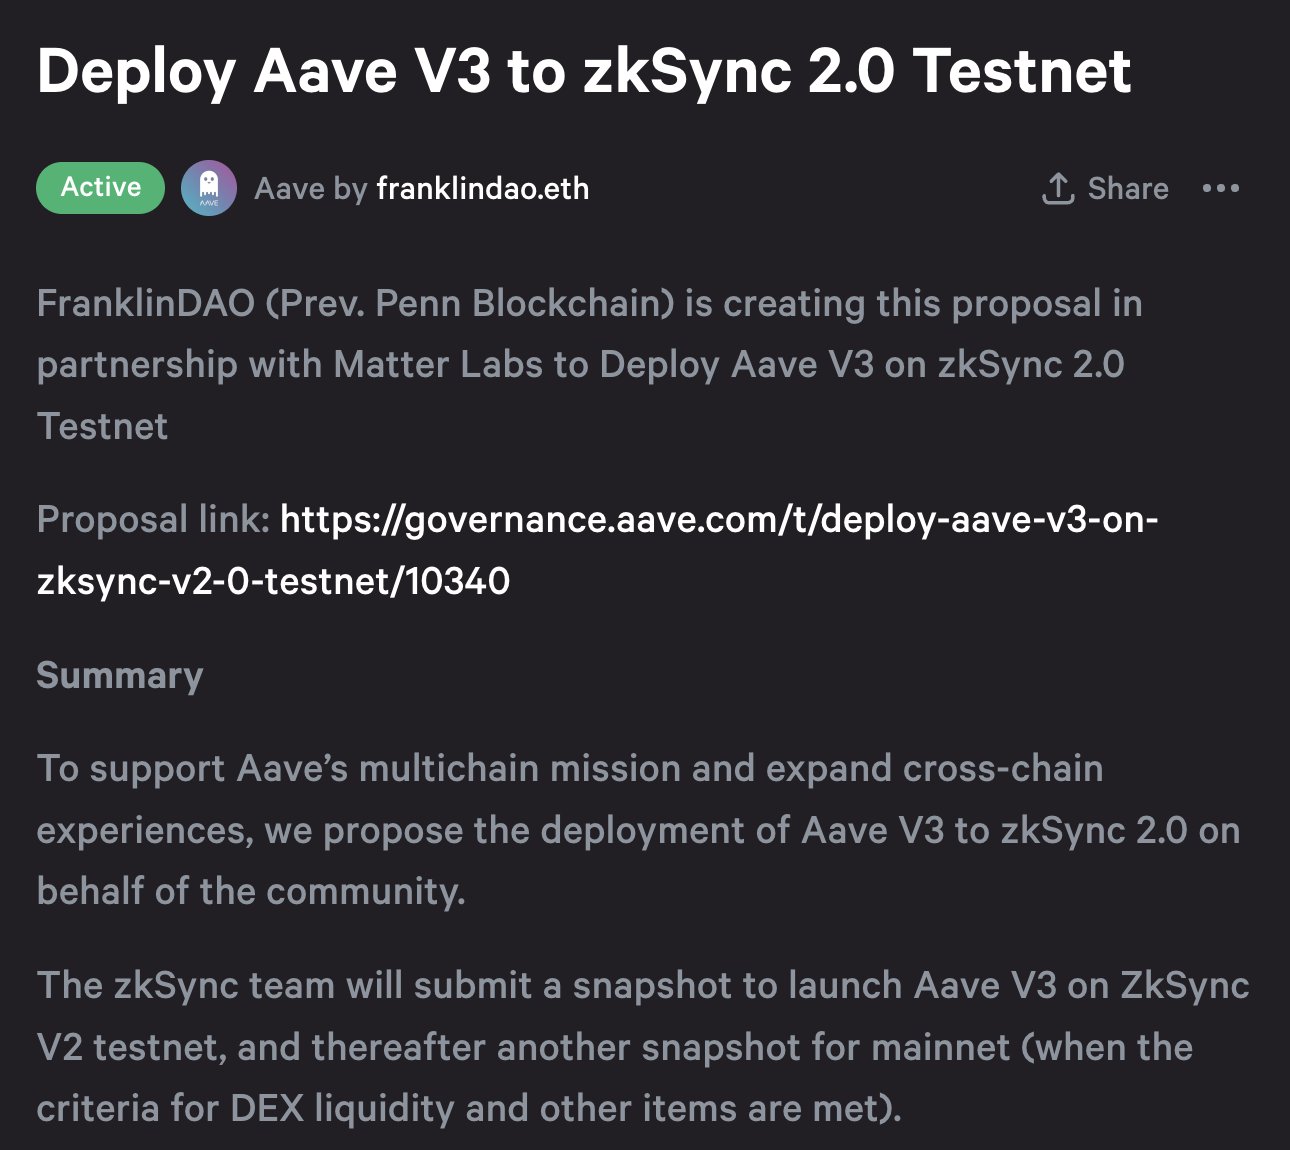 Aave v3 deployment on zkSync 2.0 testnet